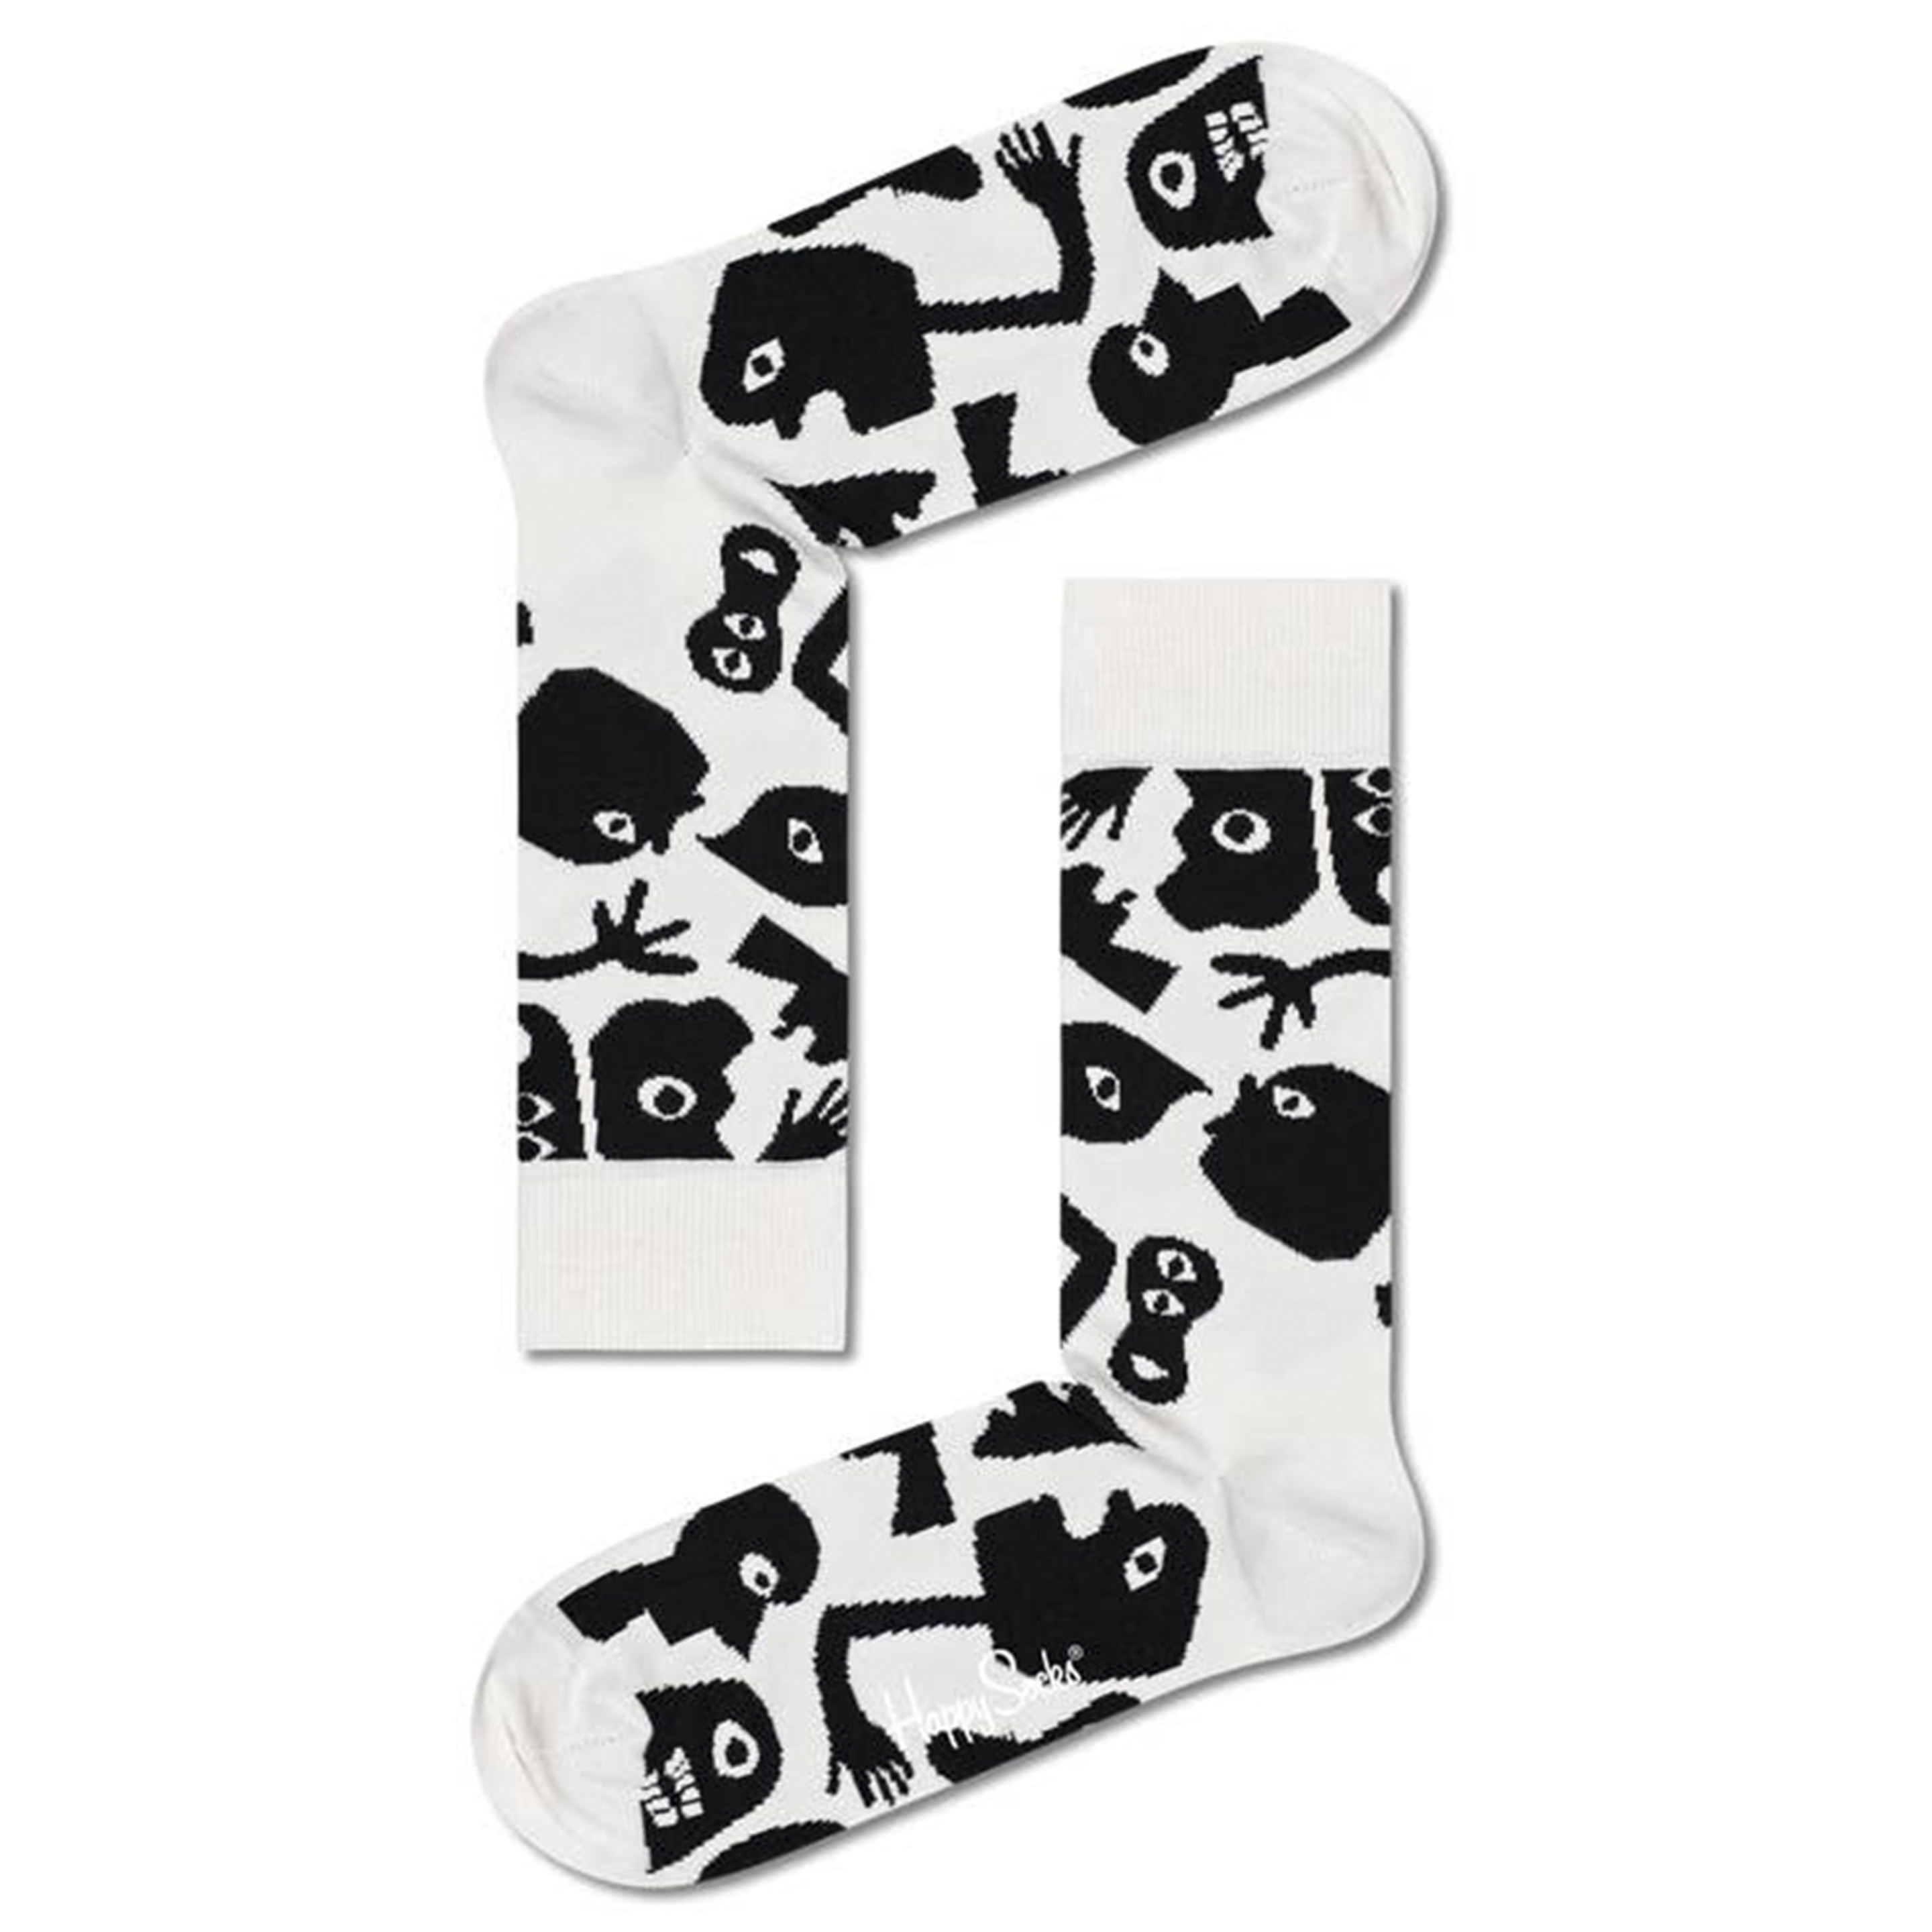 Calcetines Happy Socks Sombras - multicolor - 